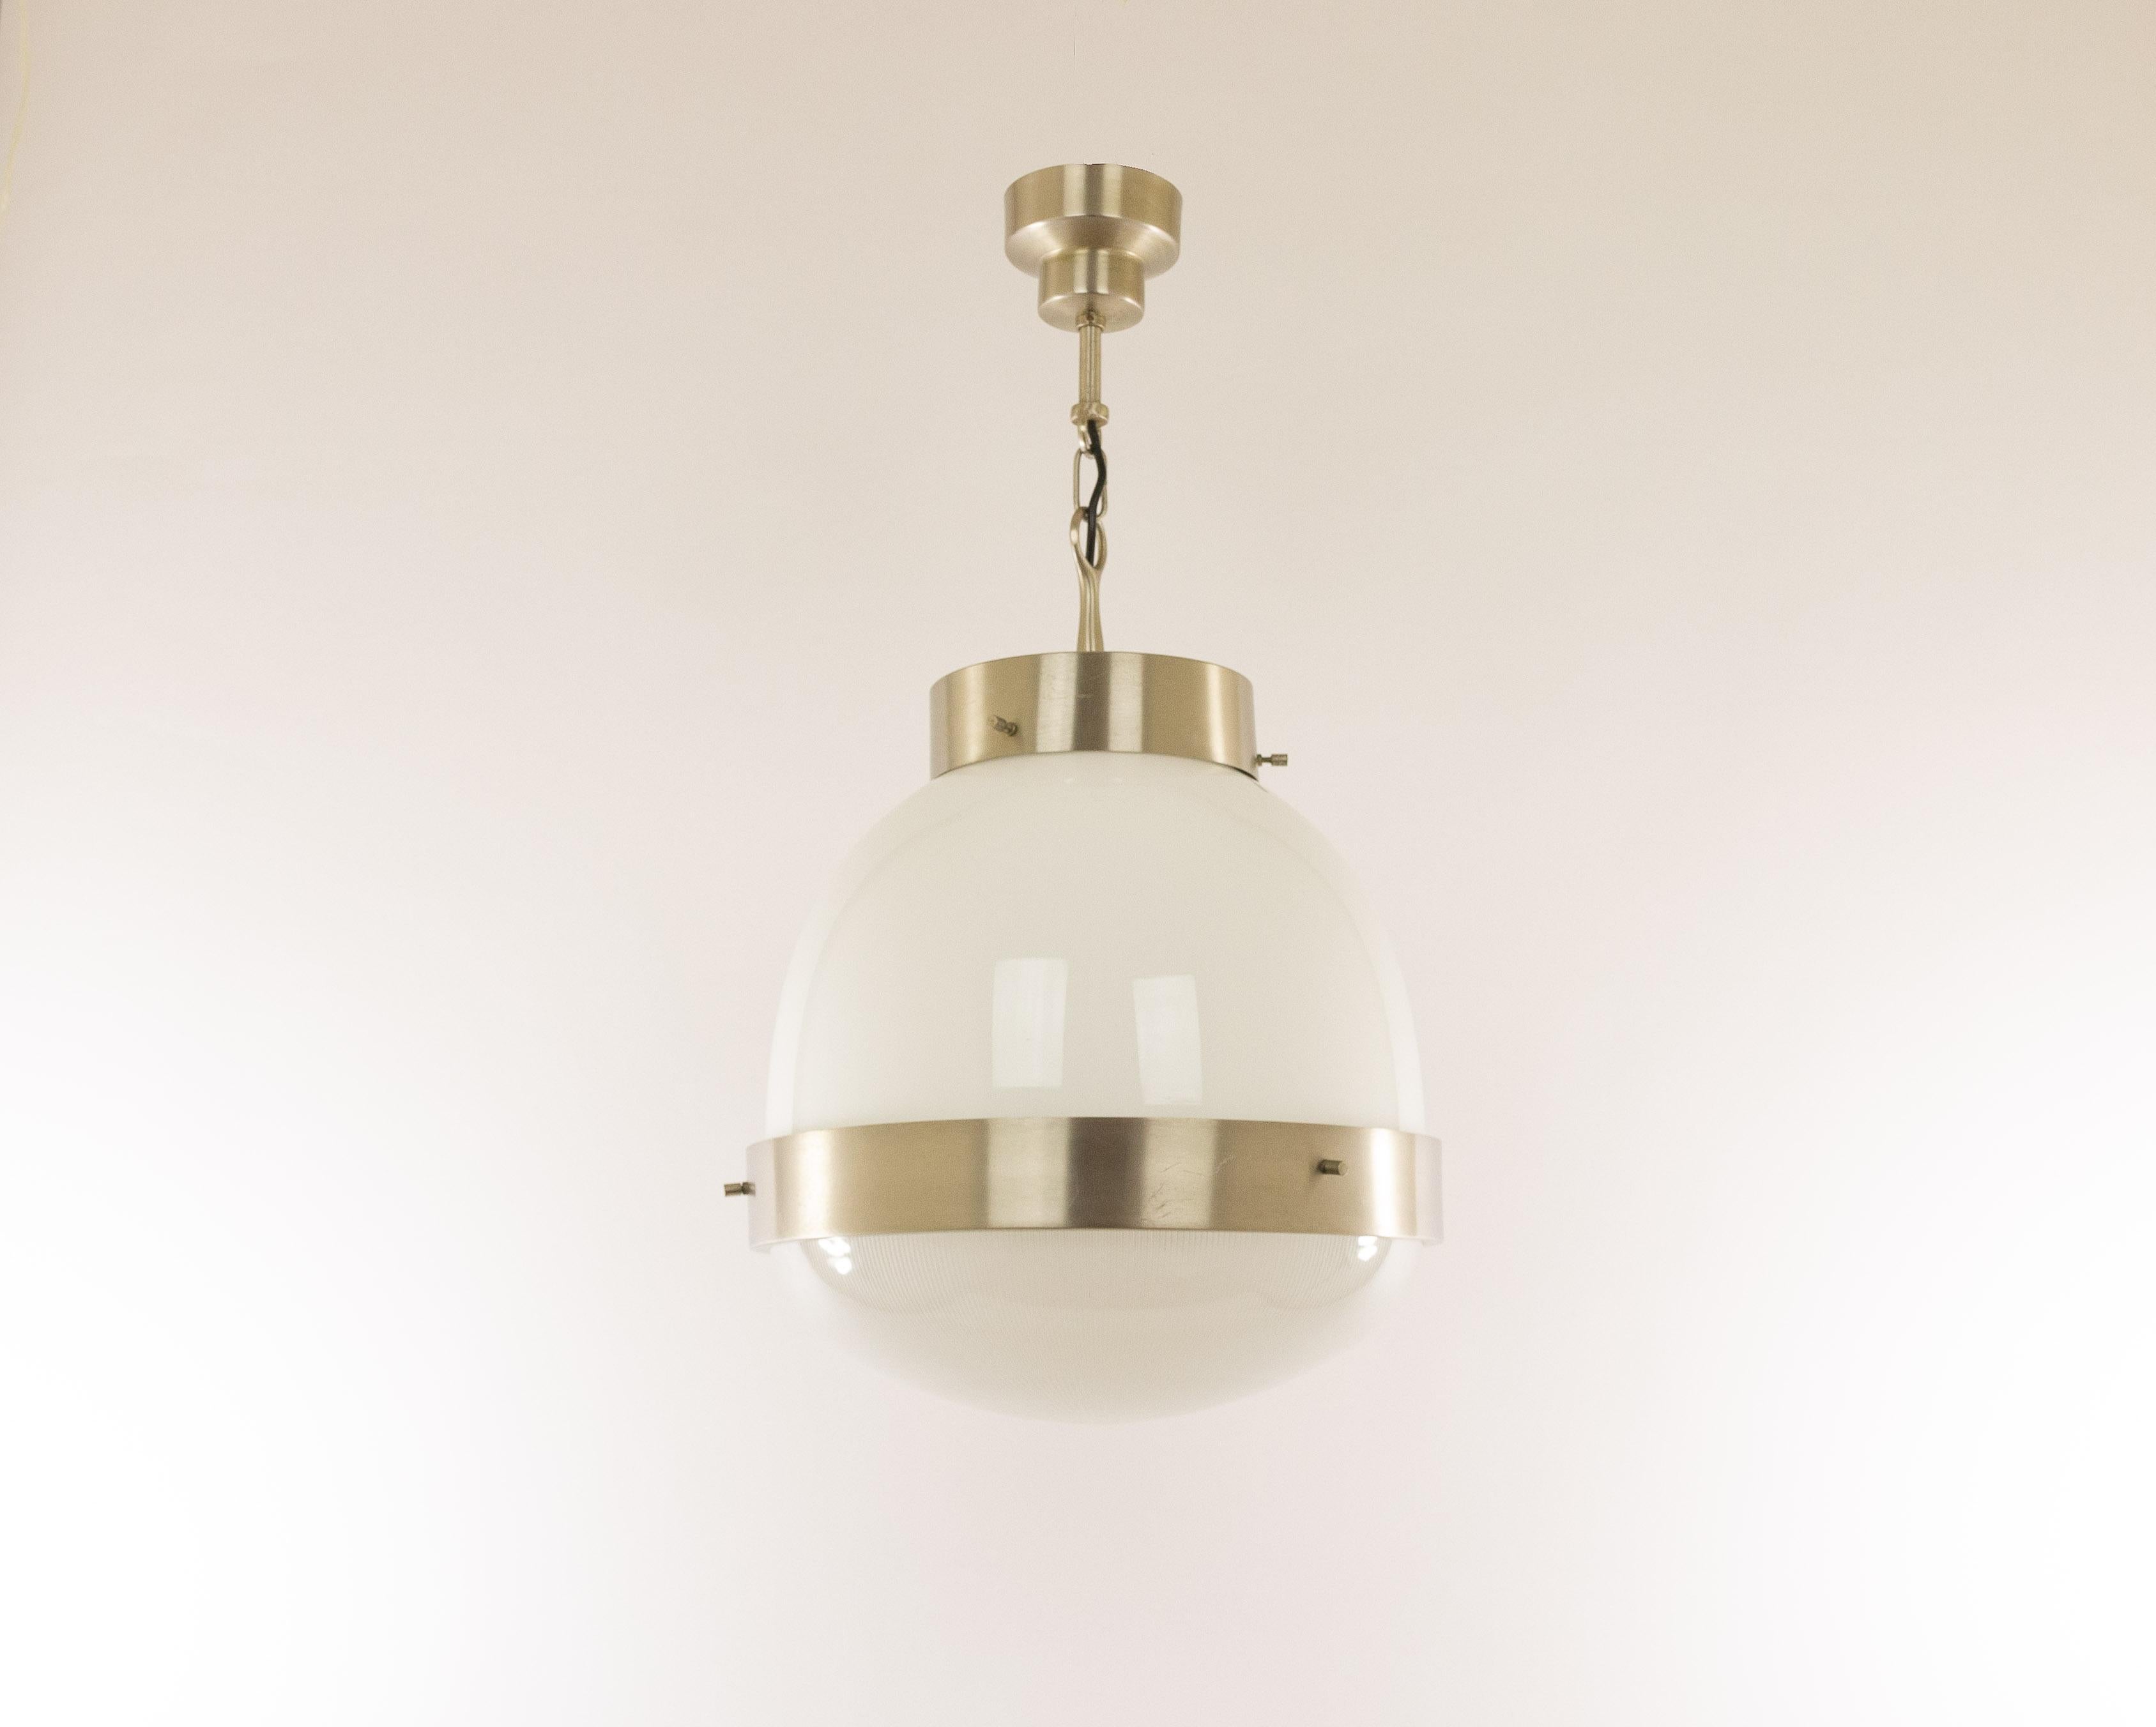 Sergio Mazza a conçu cette suspension Delta Grande pour le fabricant de luminaires italien Artemide dans les années 1960.

Le modèle se compose d'une coupe en cristal pressé et d'un abat-jour opalin. La structure est en laiton nickelé